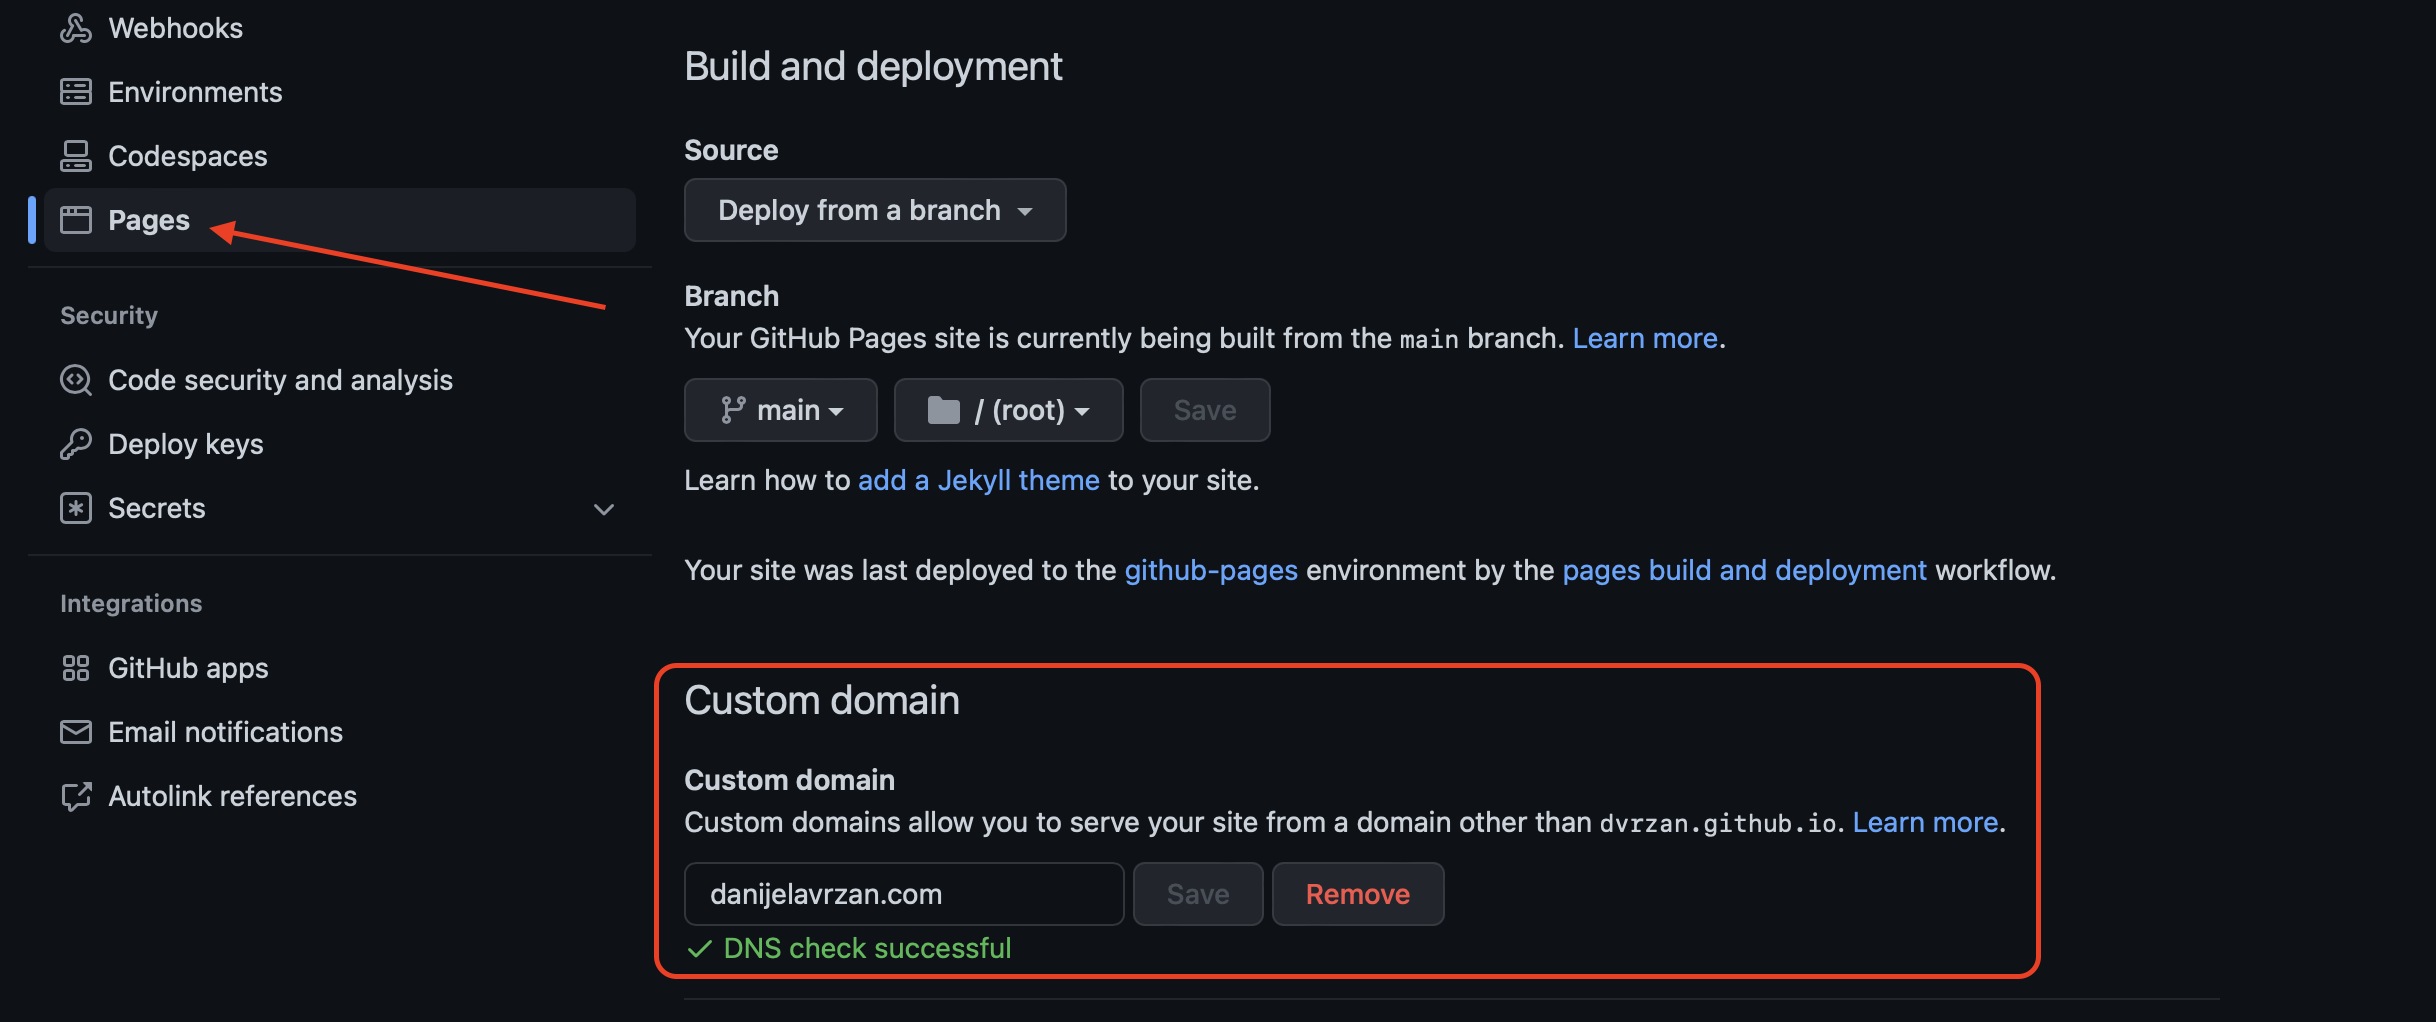 GitHub Pages settings section and Custom domain setup